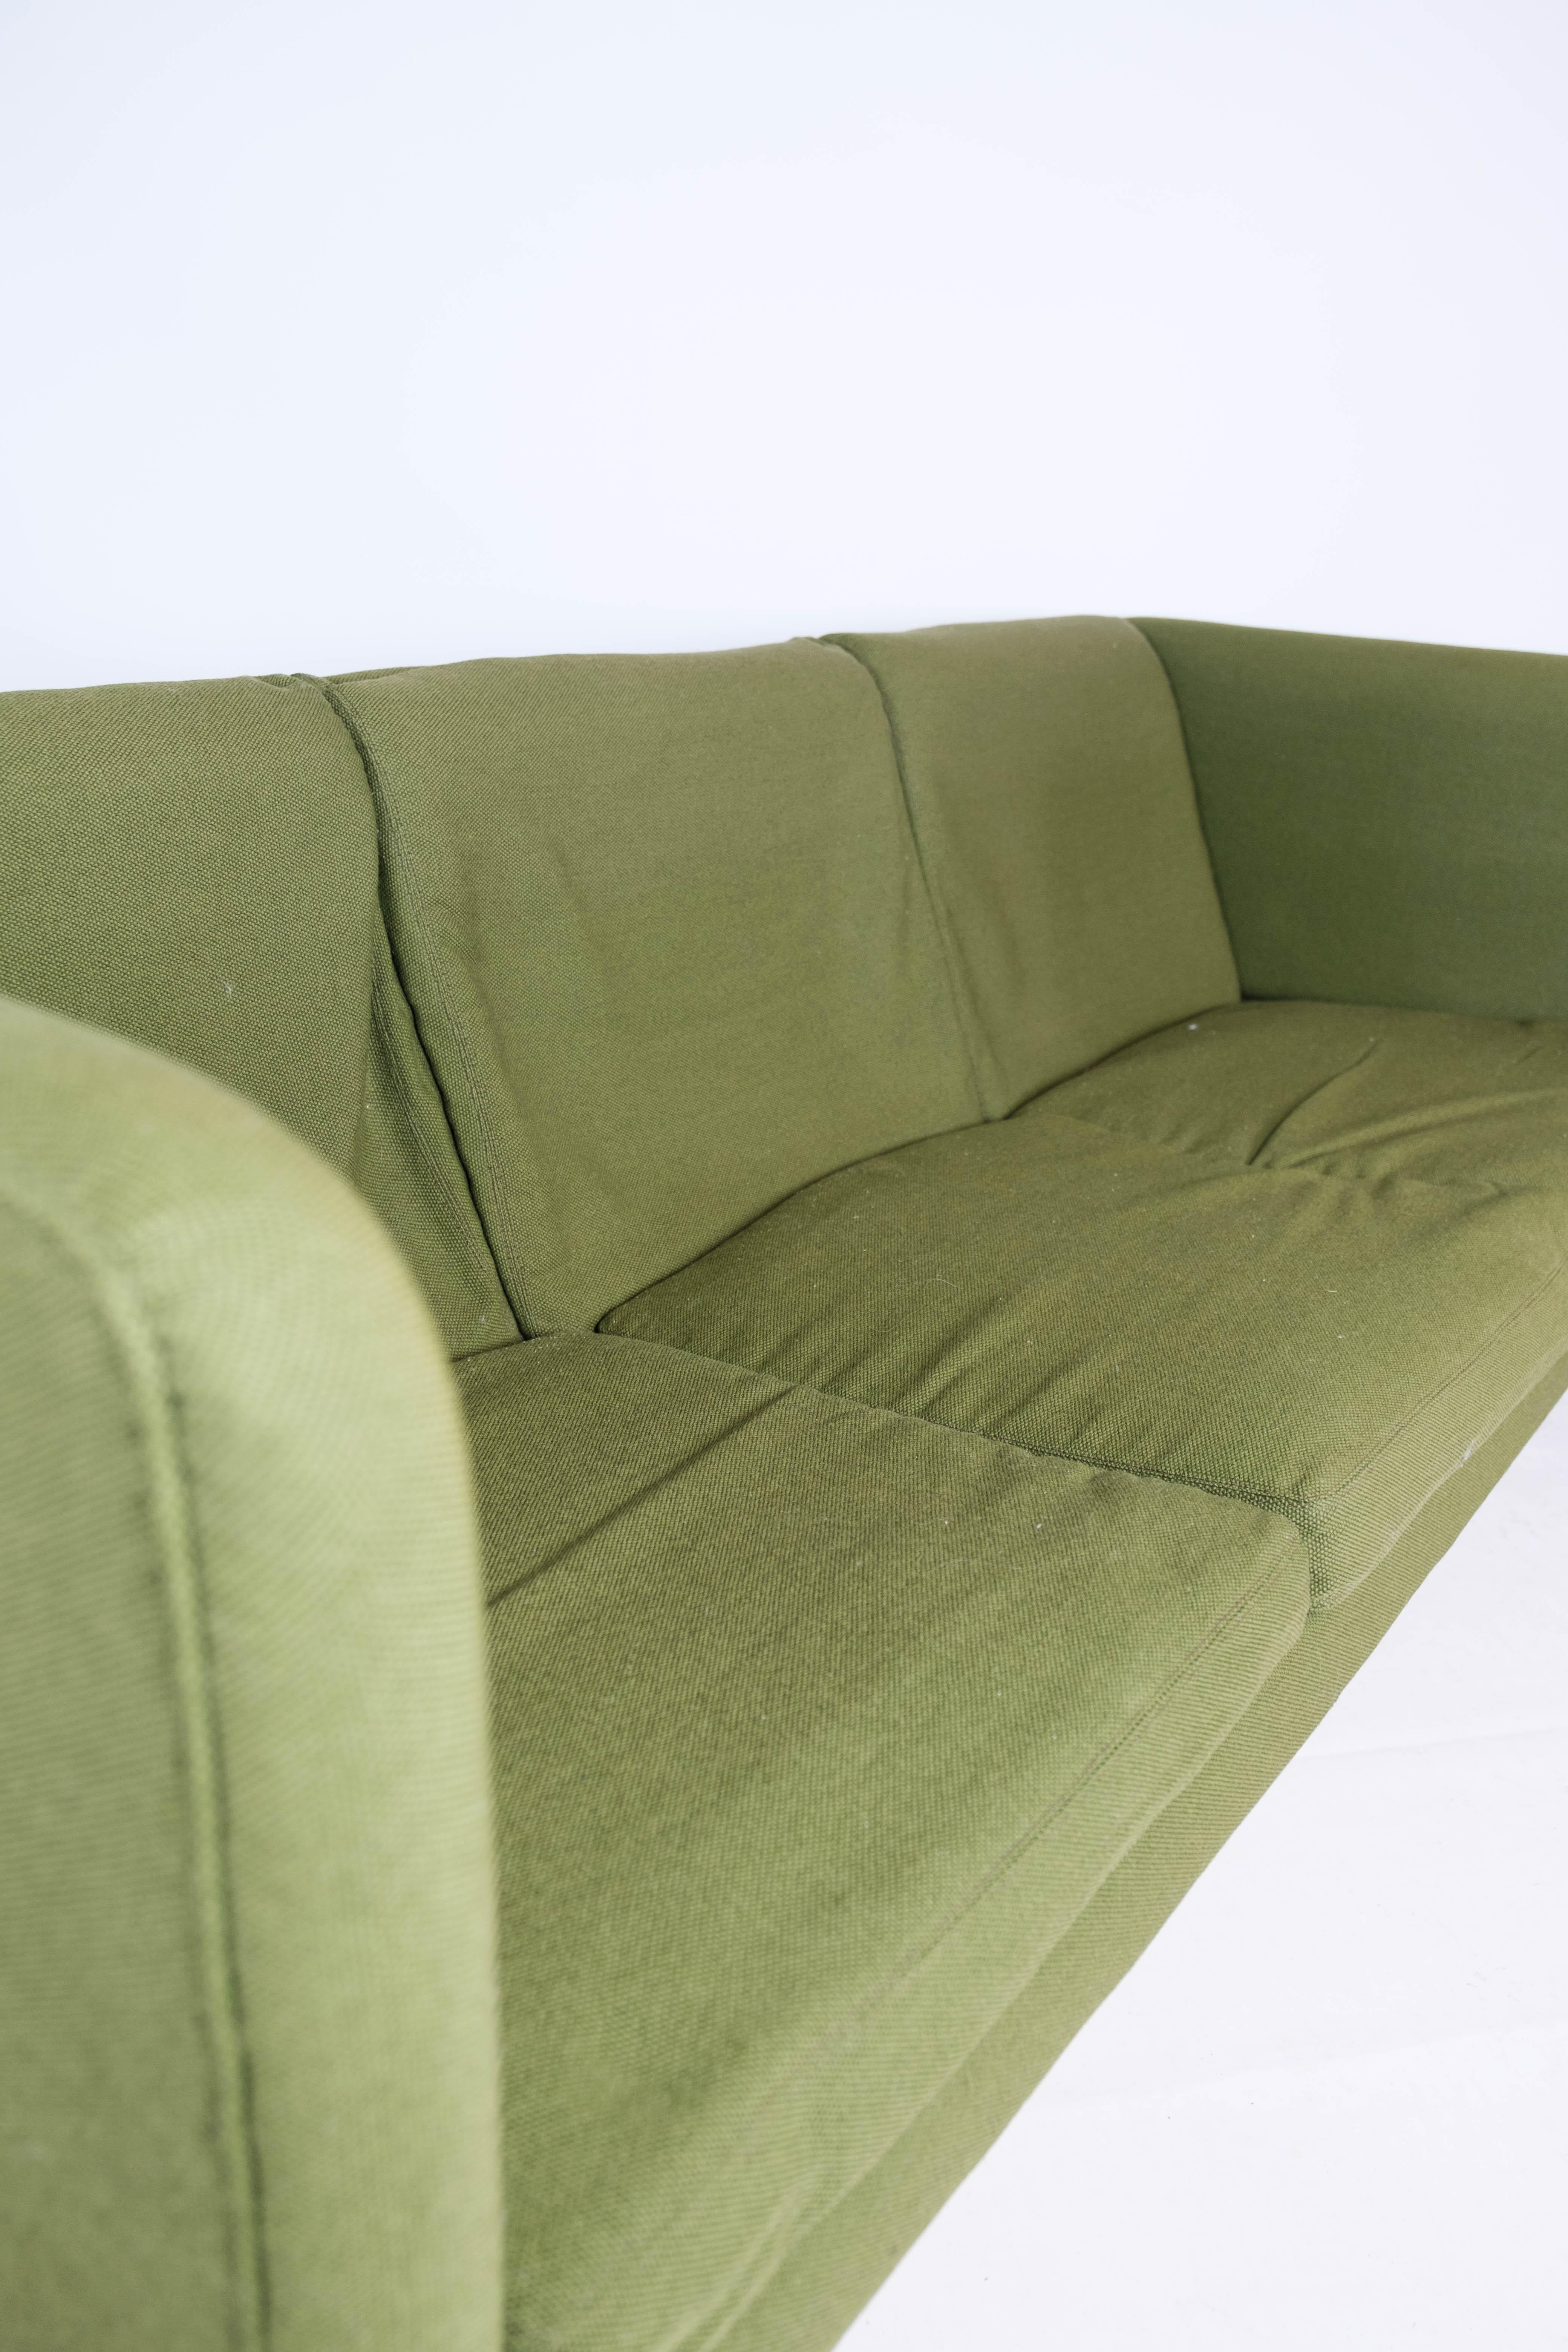 Three Seater Sofa, Model AP 18S, Designed by Hans J. Wegner, 1960s For Sale 5